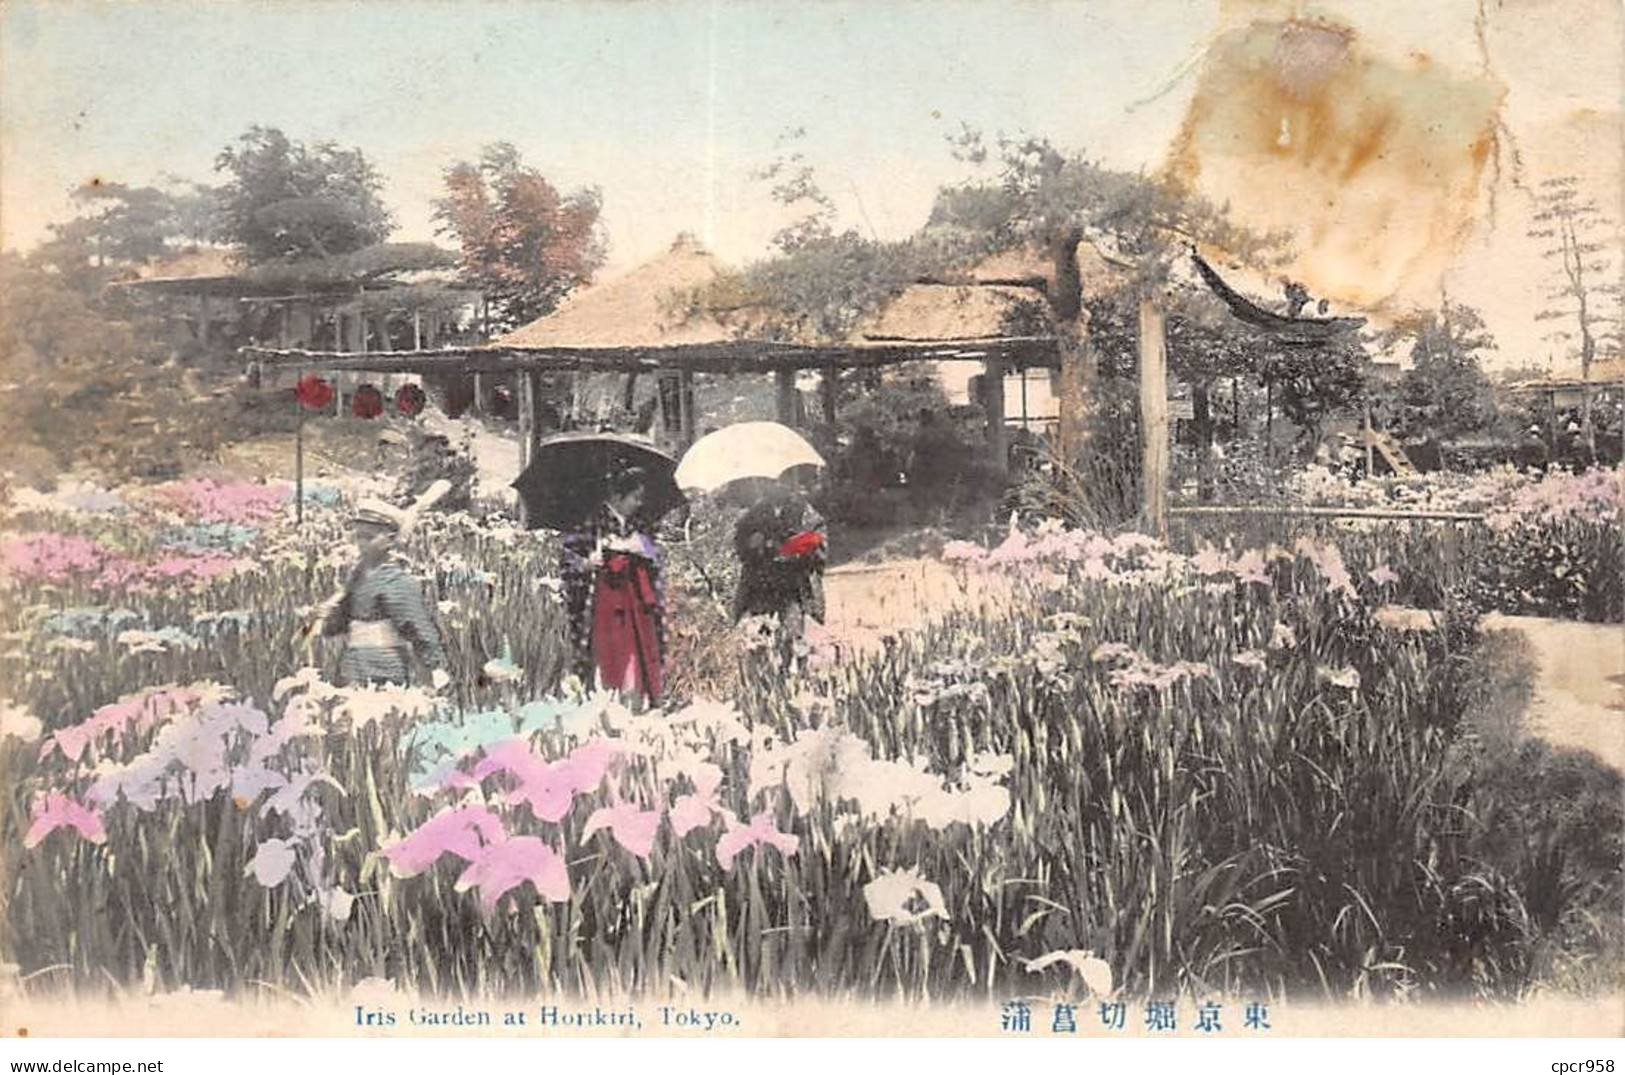 CHINE - SAN36415 - Cachet Tientsin - En L'état - Carte Japonaise - Geishas Dans Un Jardin - Chine